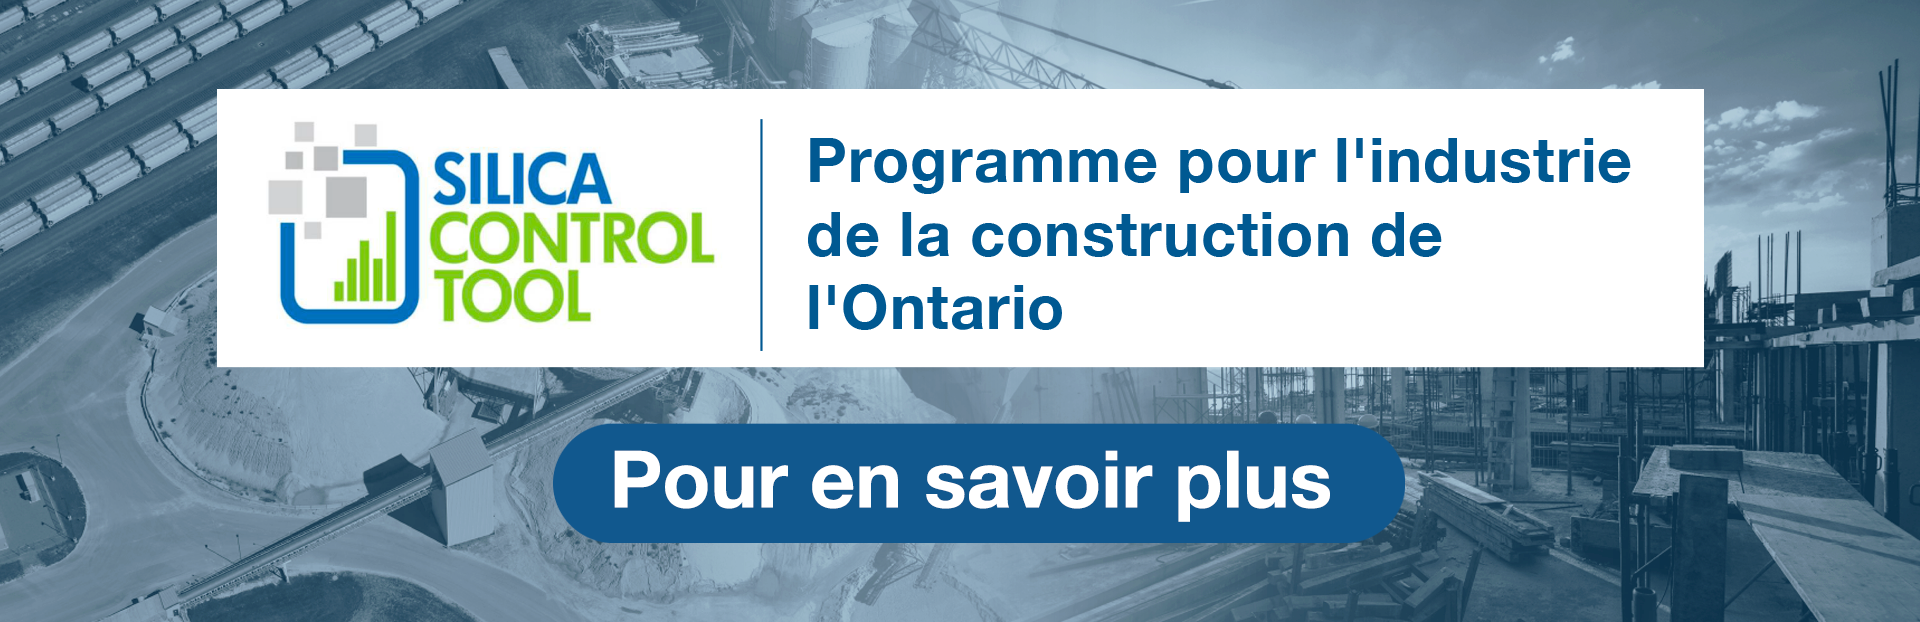 Silica Control Tool | Programme pour l’industrie de la construction de l’Ontario | Pour en savoir plus